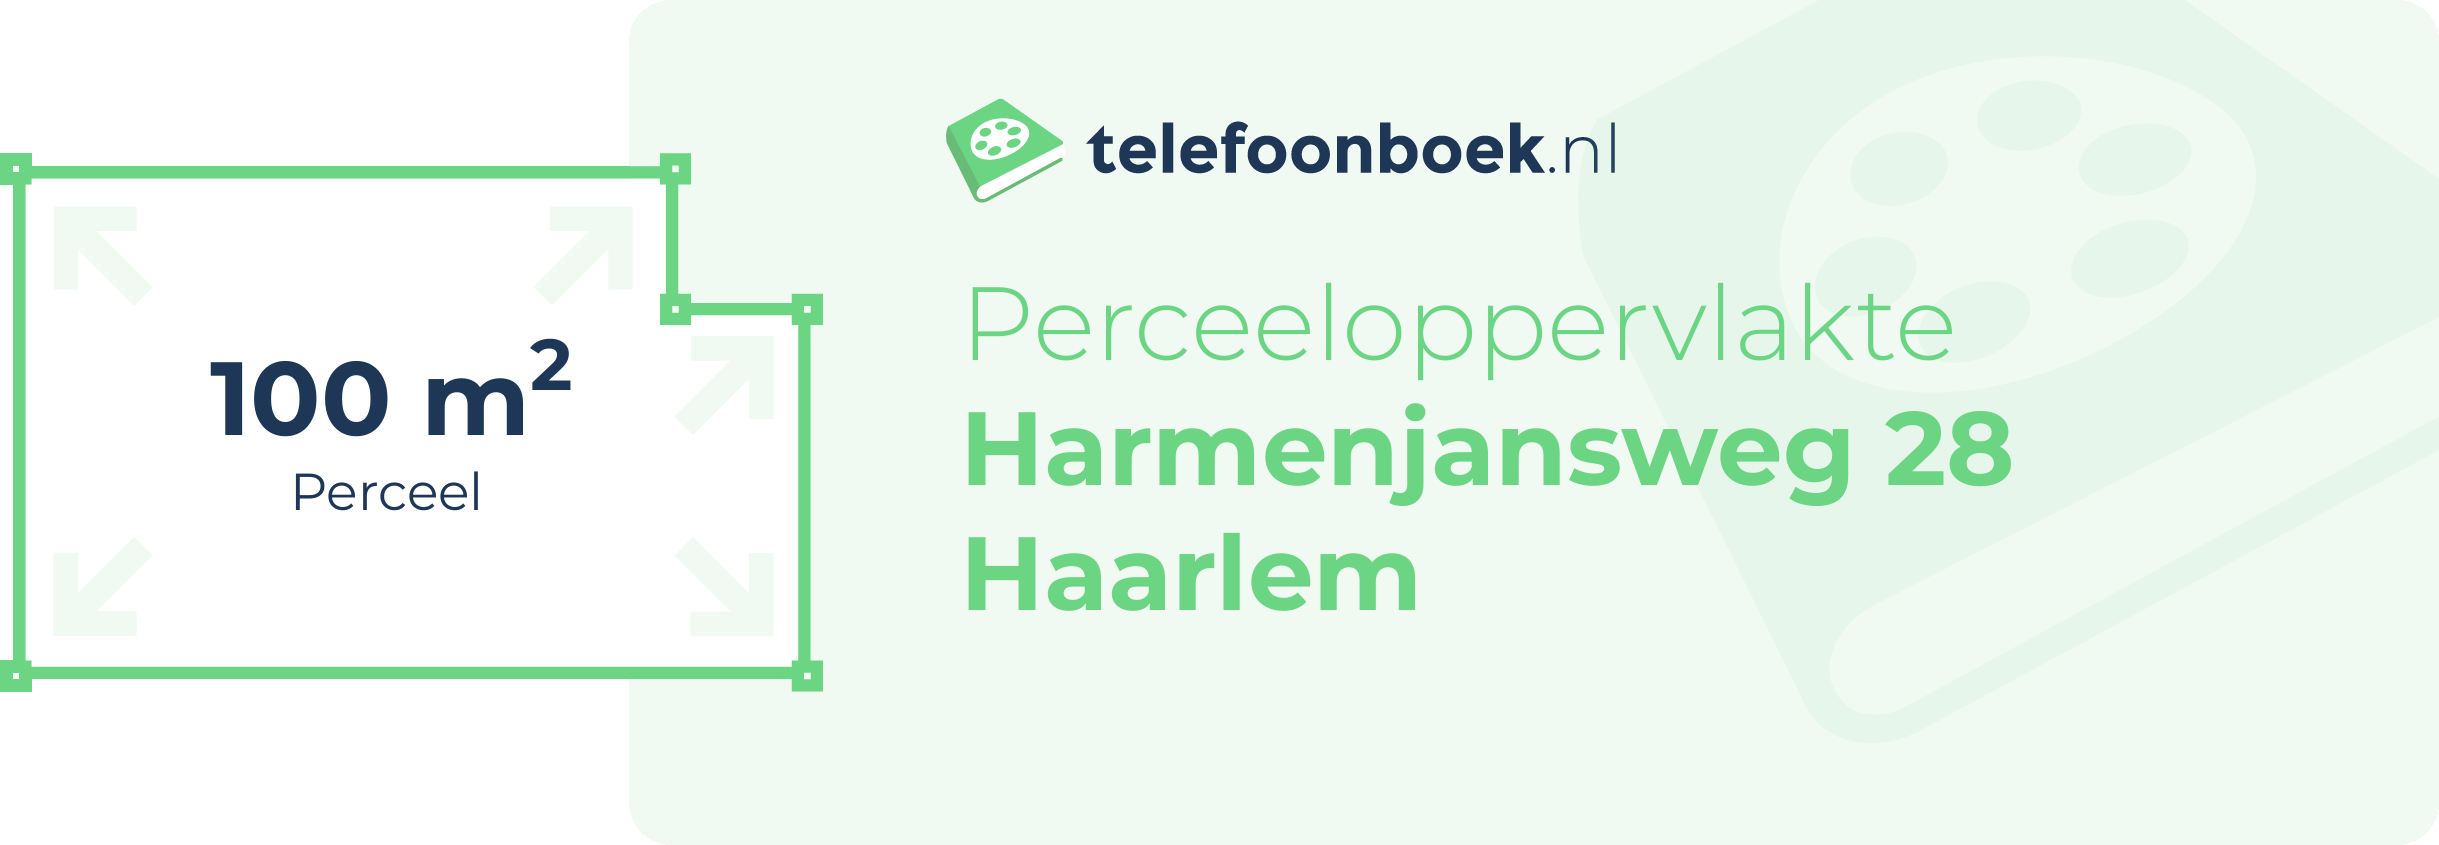 Perceeloppervlakte Harmenjansweg 28 Haarlem